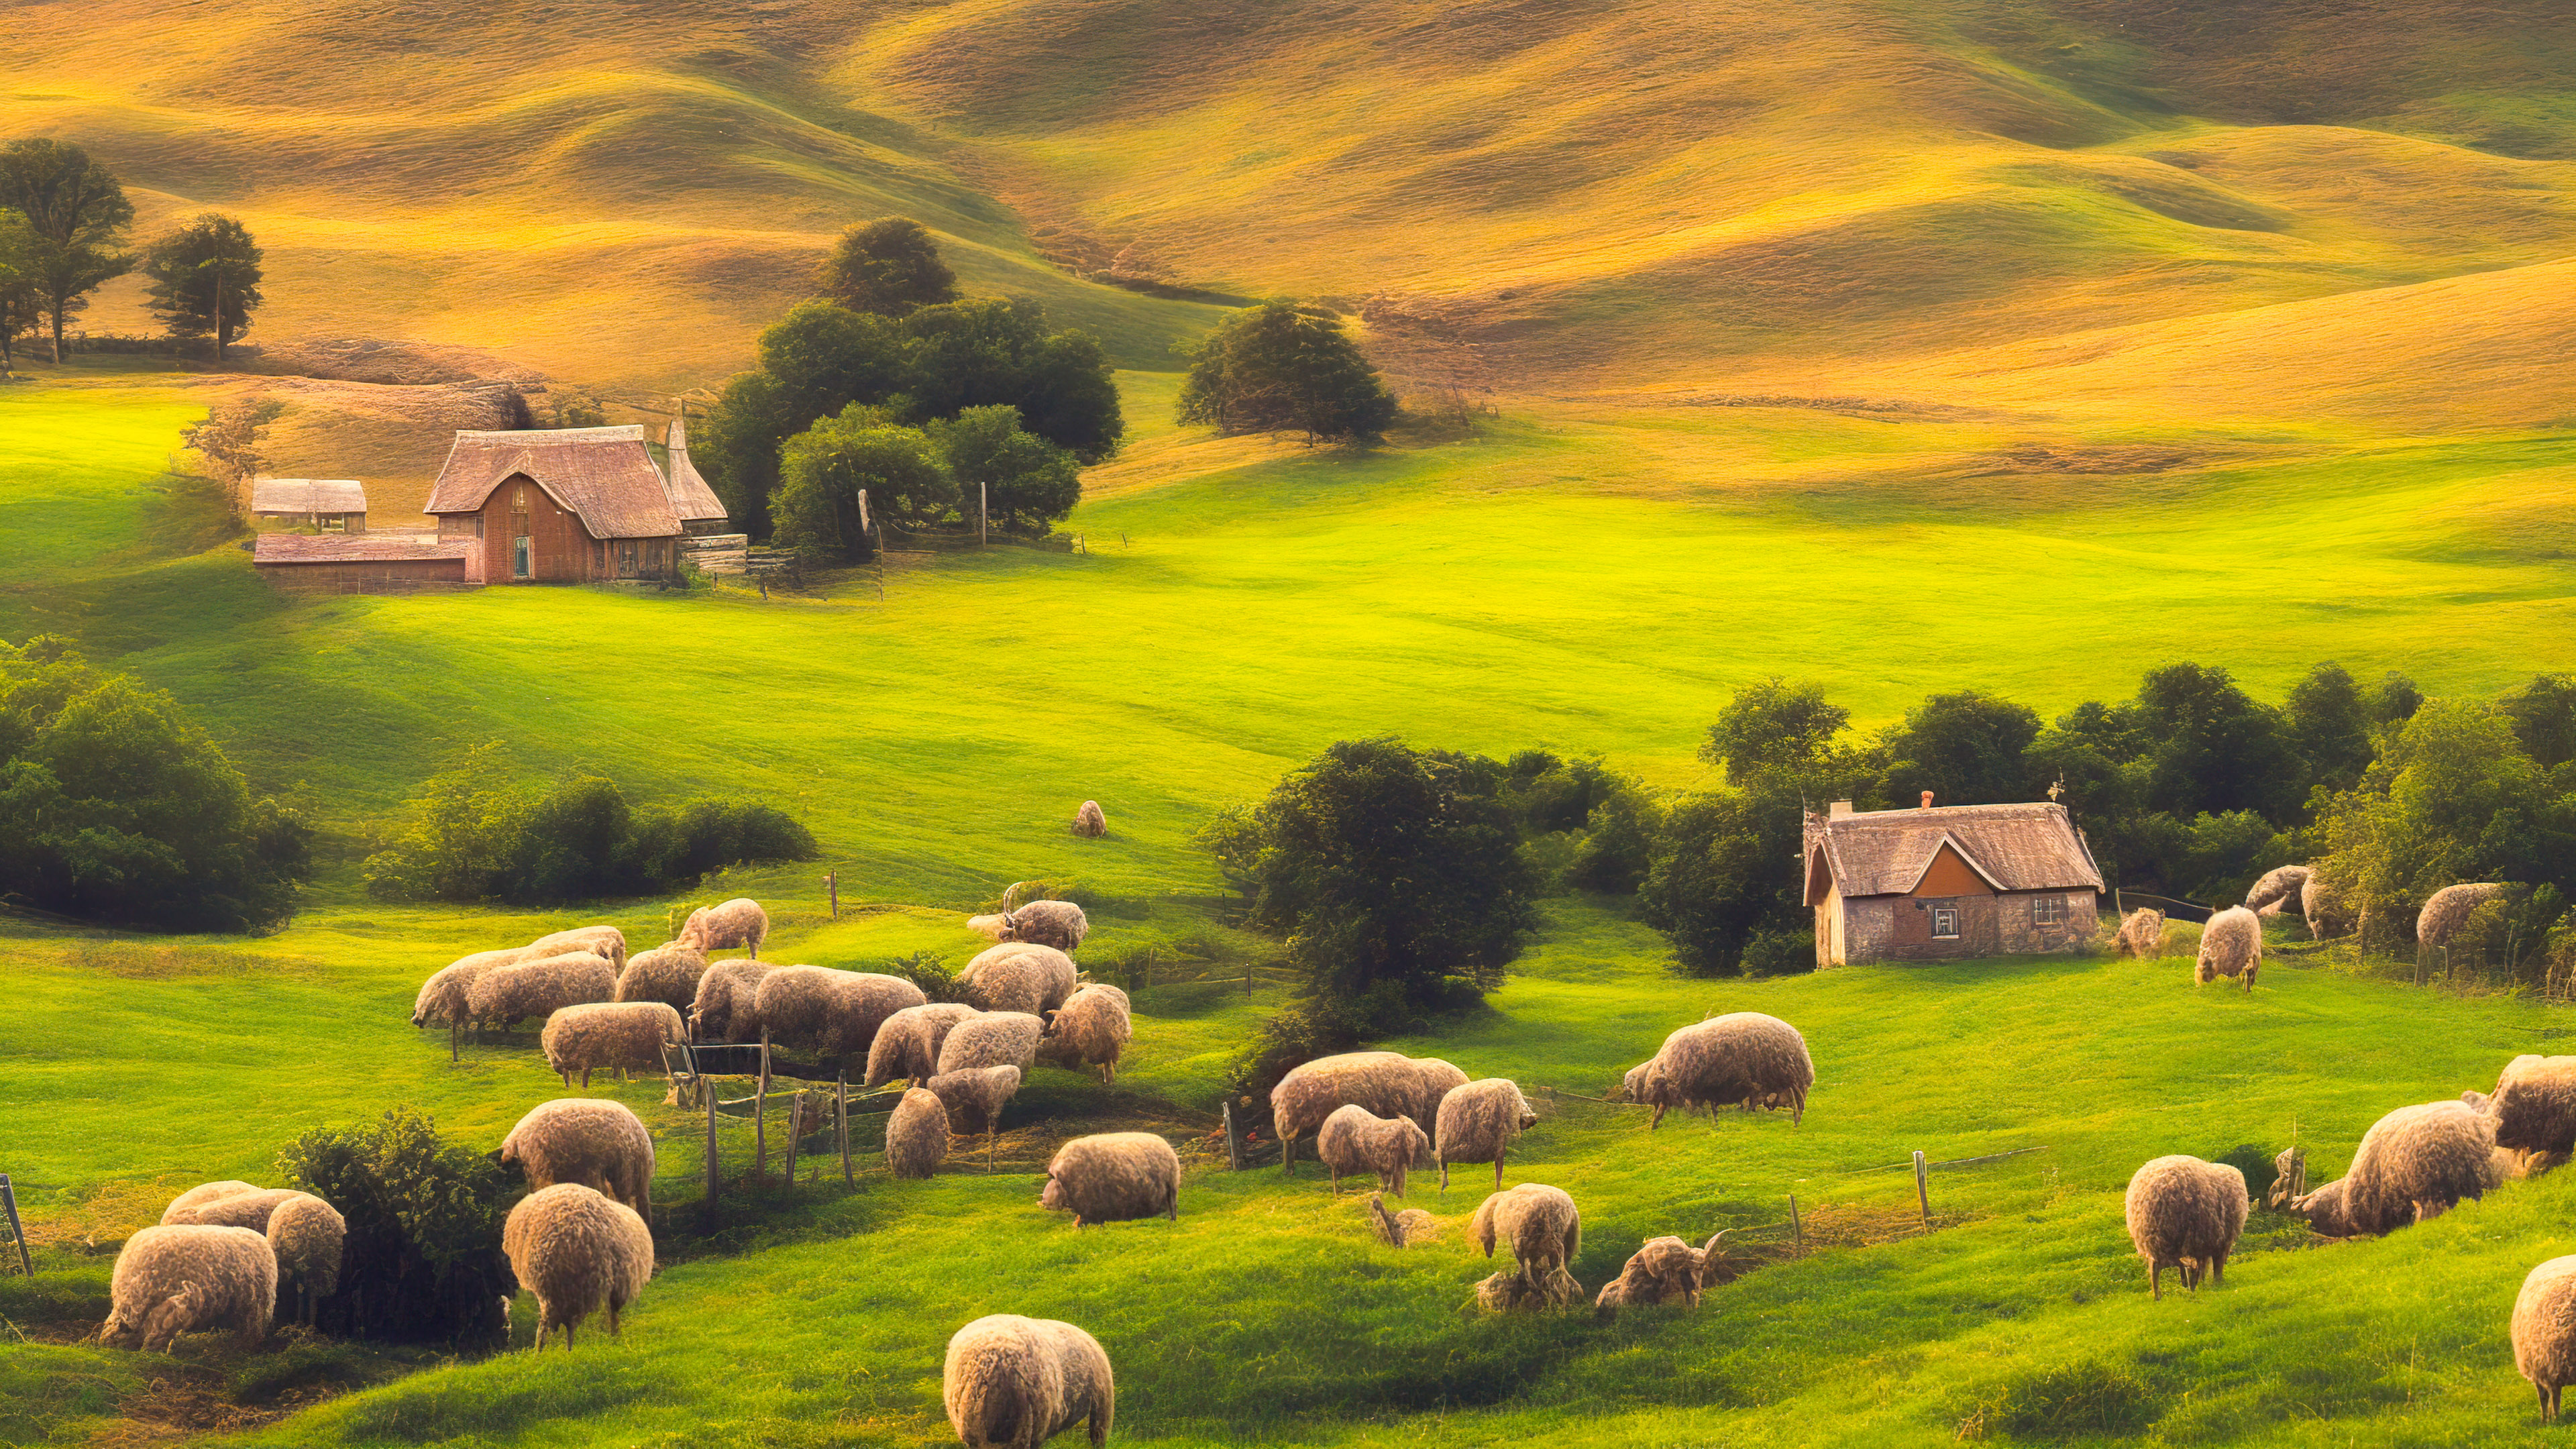 Téléchargez la sérénité de notre fond d'écran de paysage en 4K pour bureau, capturant un paisible cottage de campagne niché parmi les collines vallonnées, entouré de moutons qui paissent.